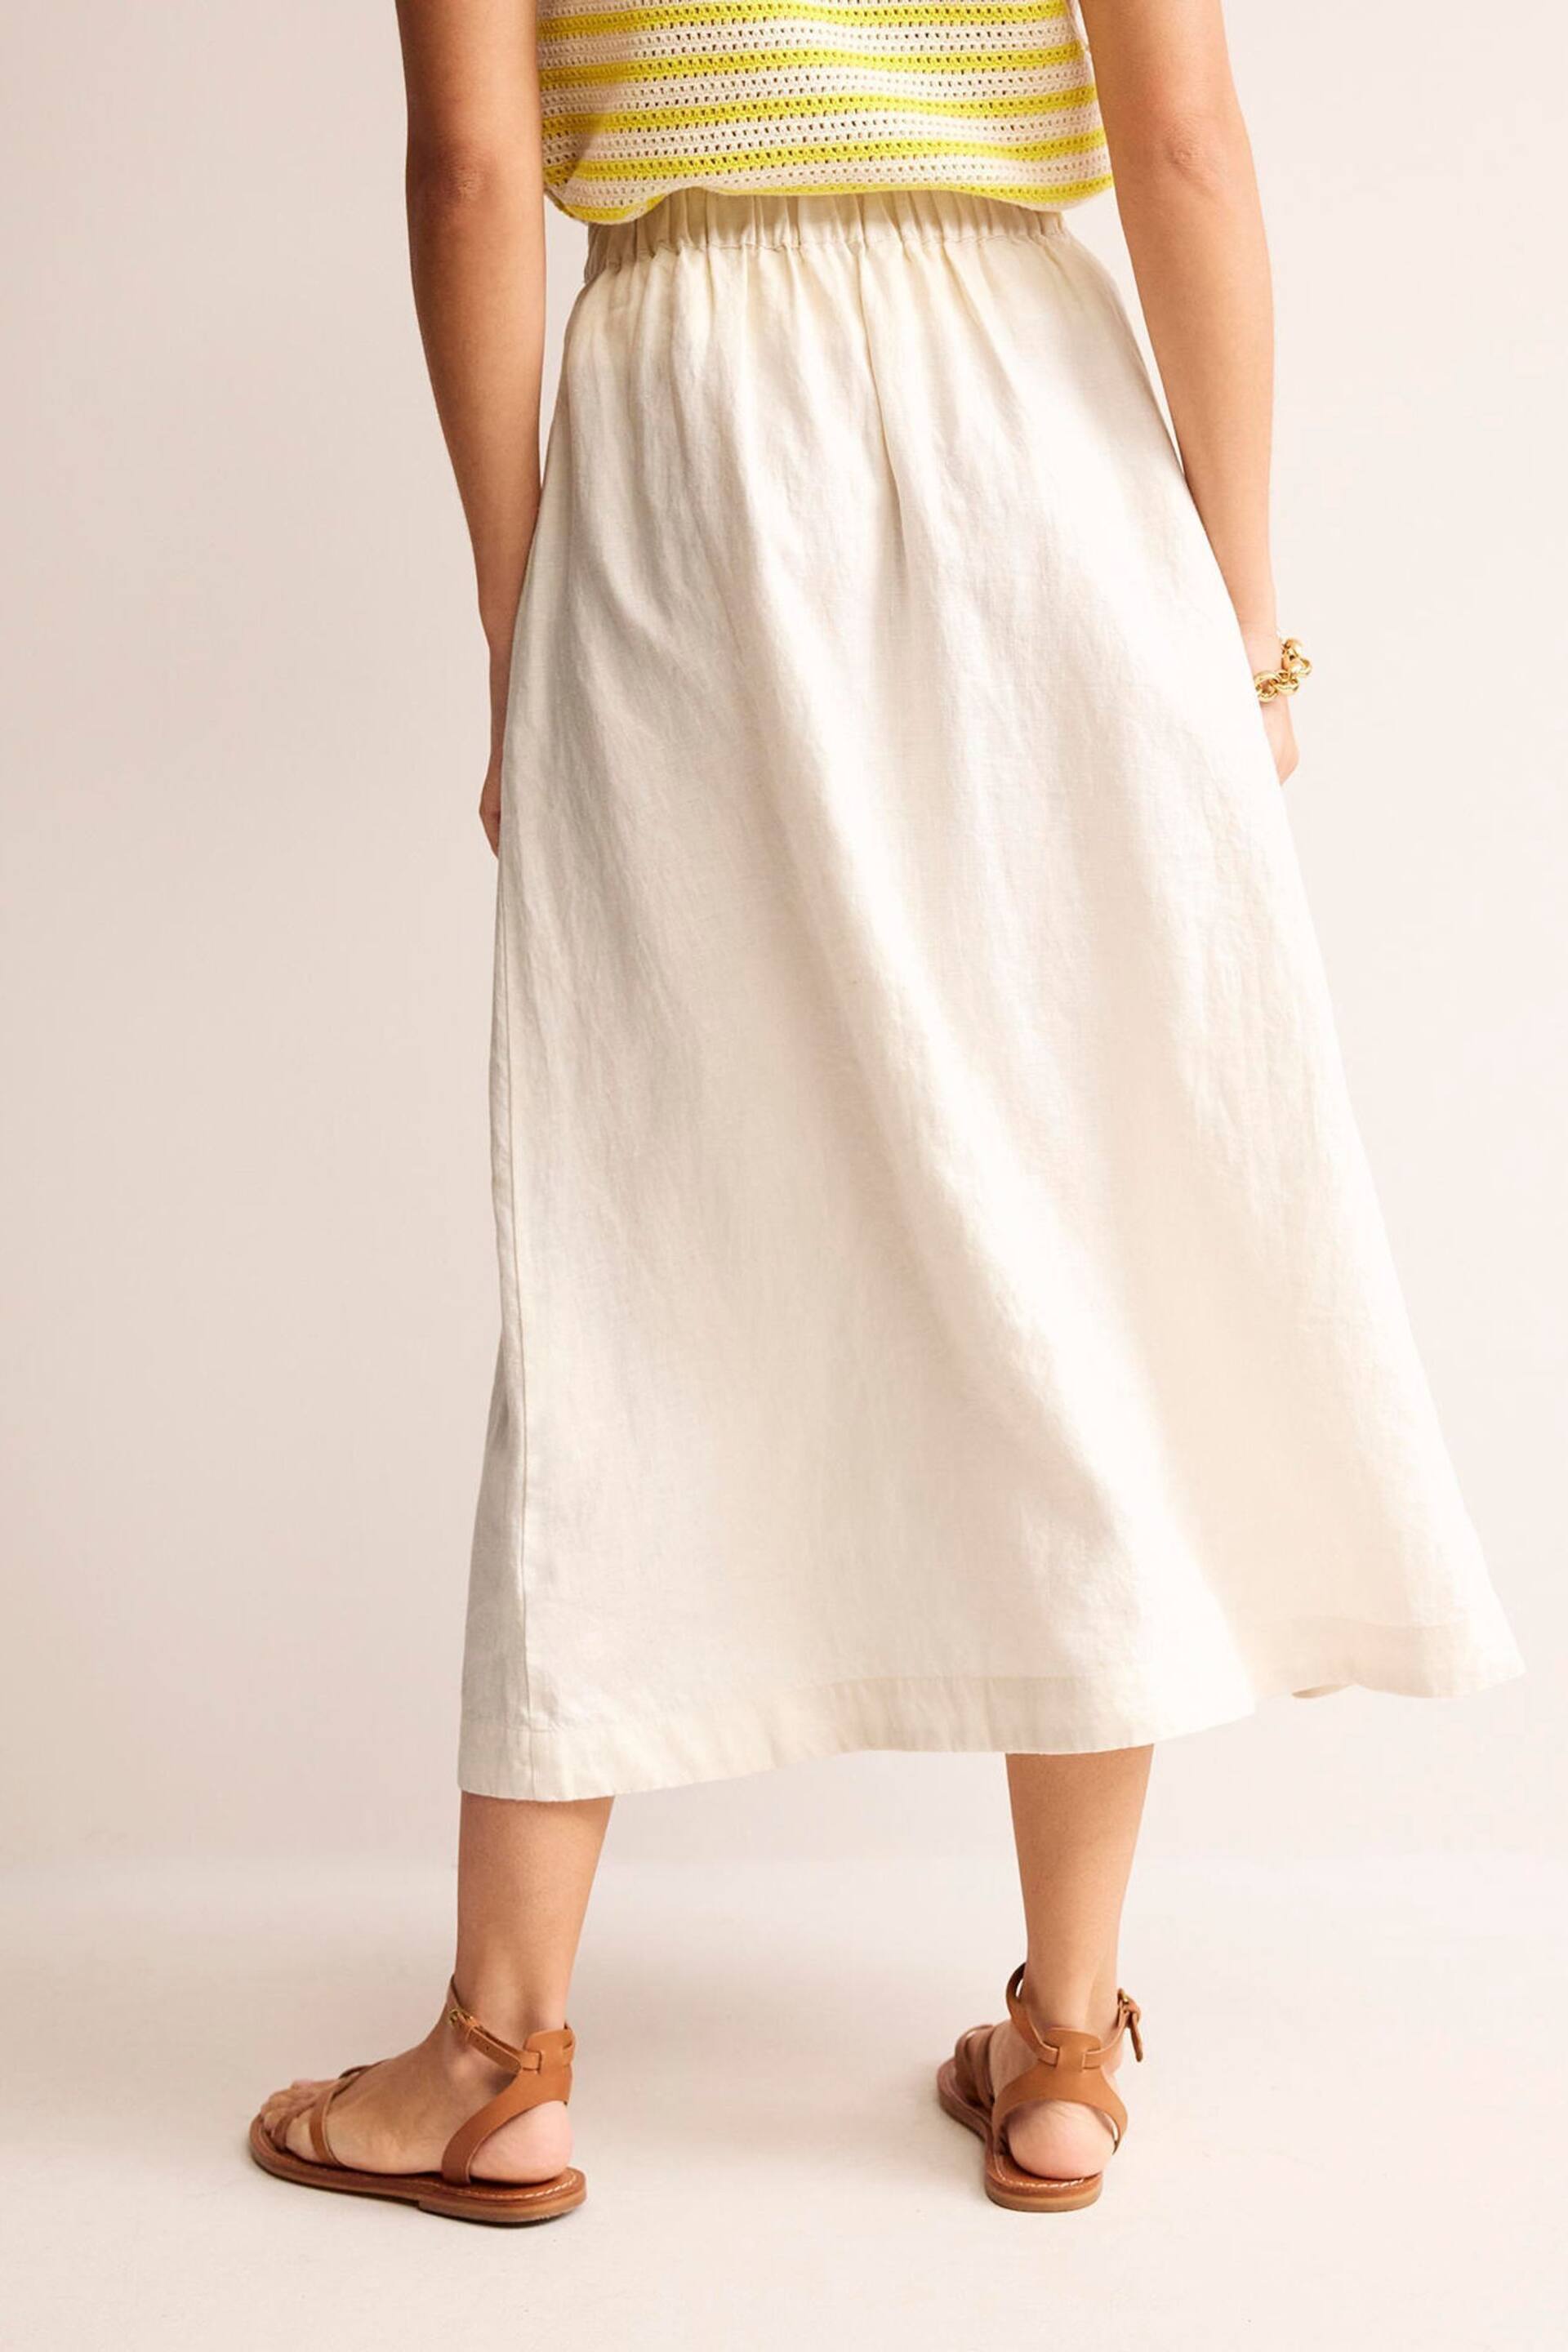 Boden Cream Petite Florence Linen Midi Skirt - Image 3 of 5